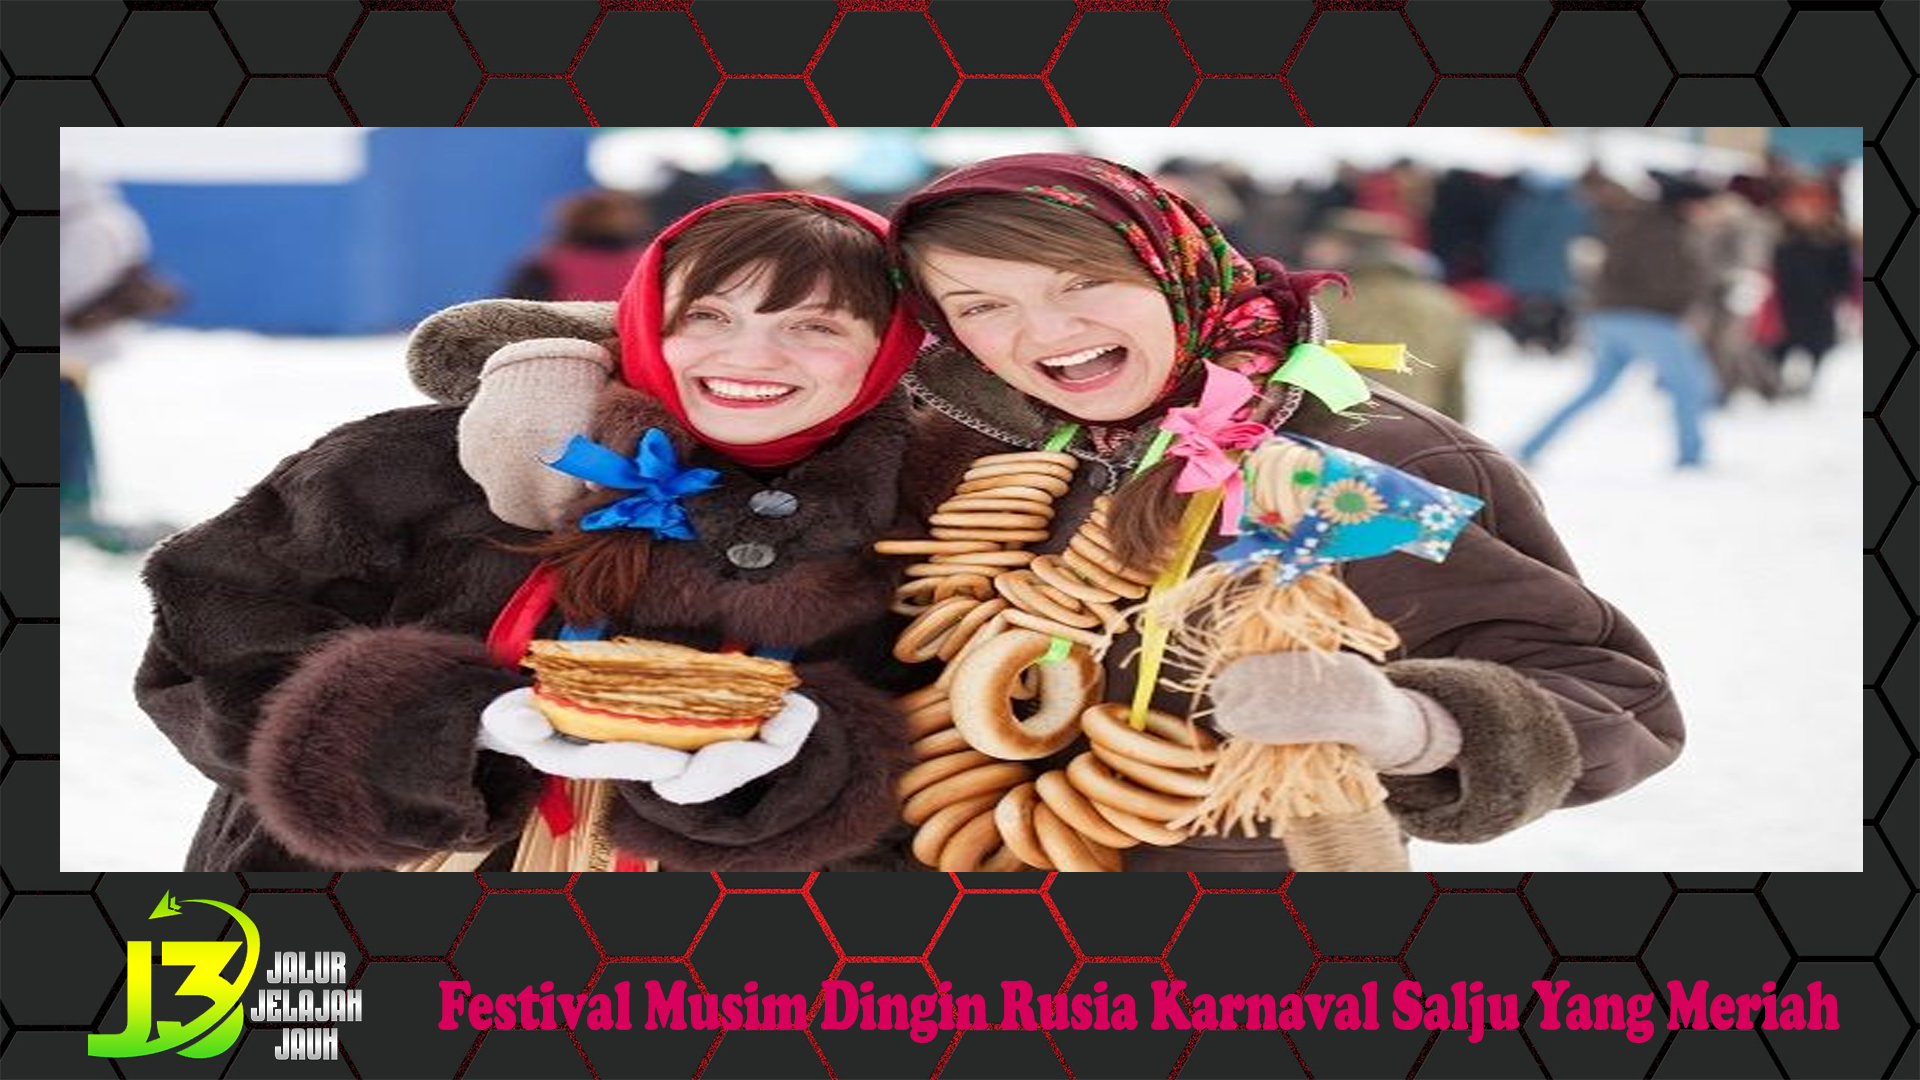 Festival Musim Dingin Rusia Karnaval Salju Yang Meriah